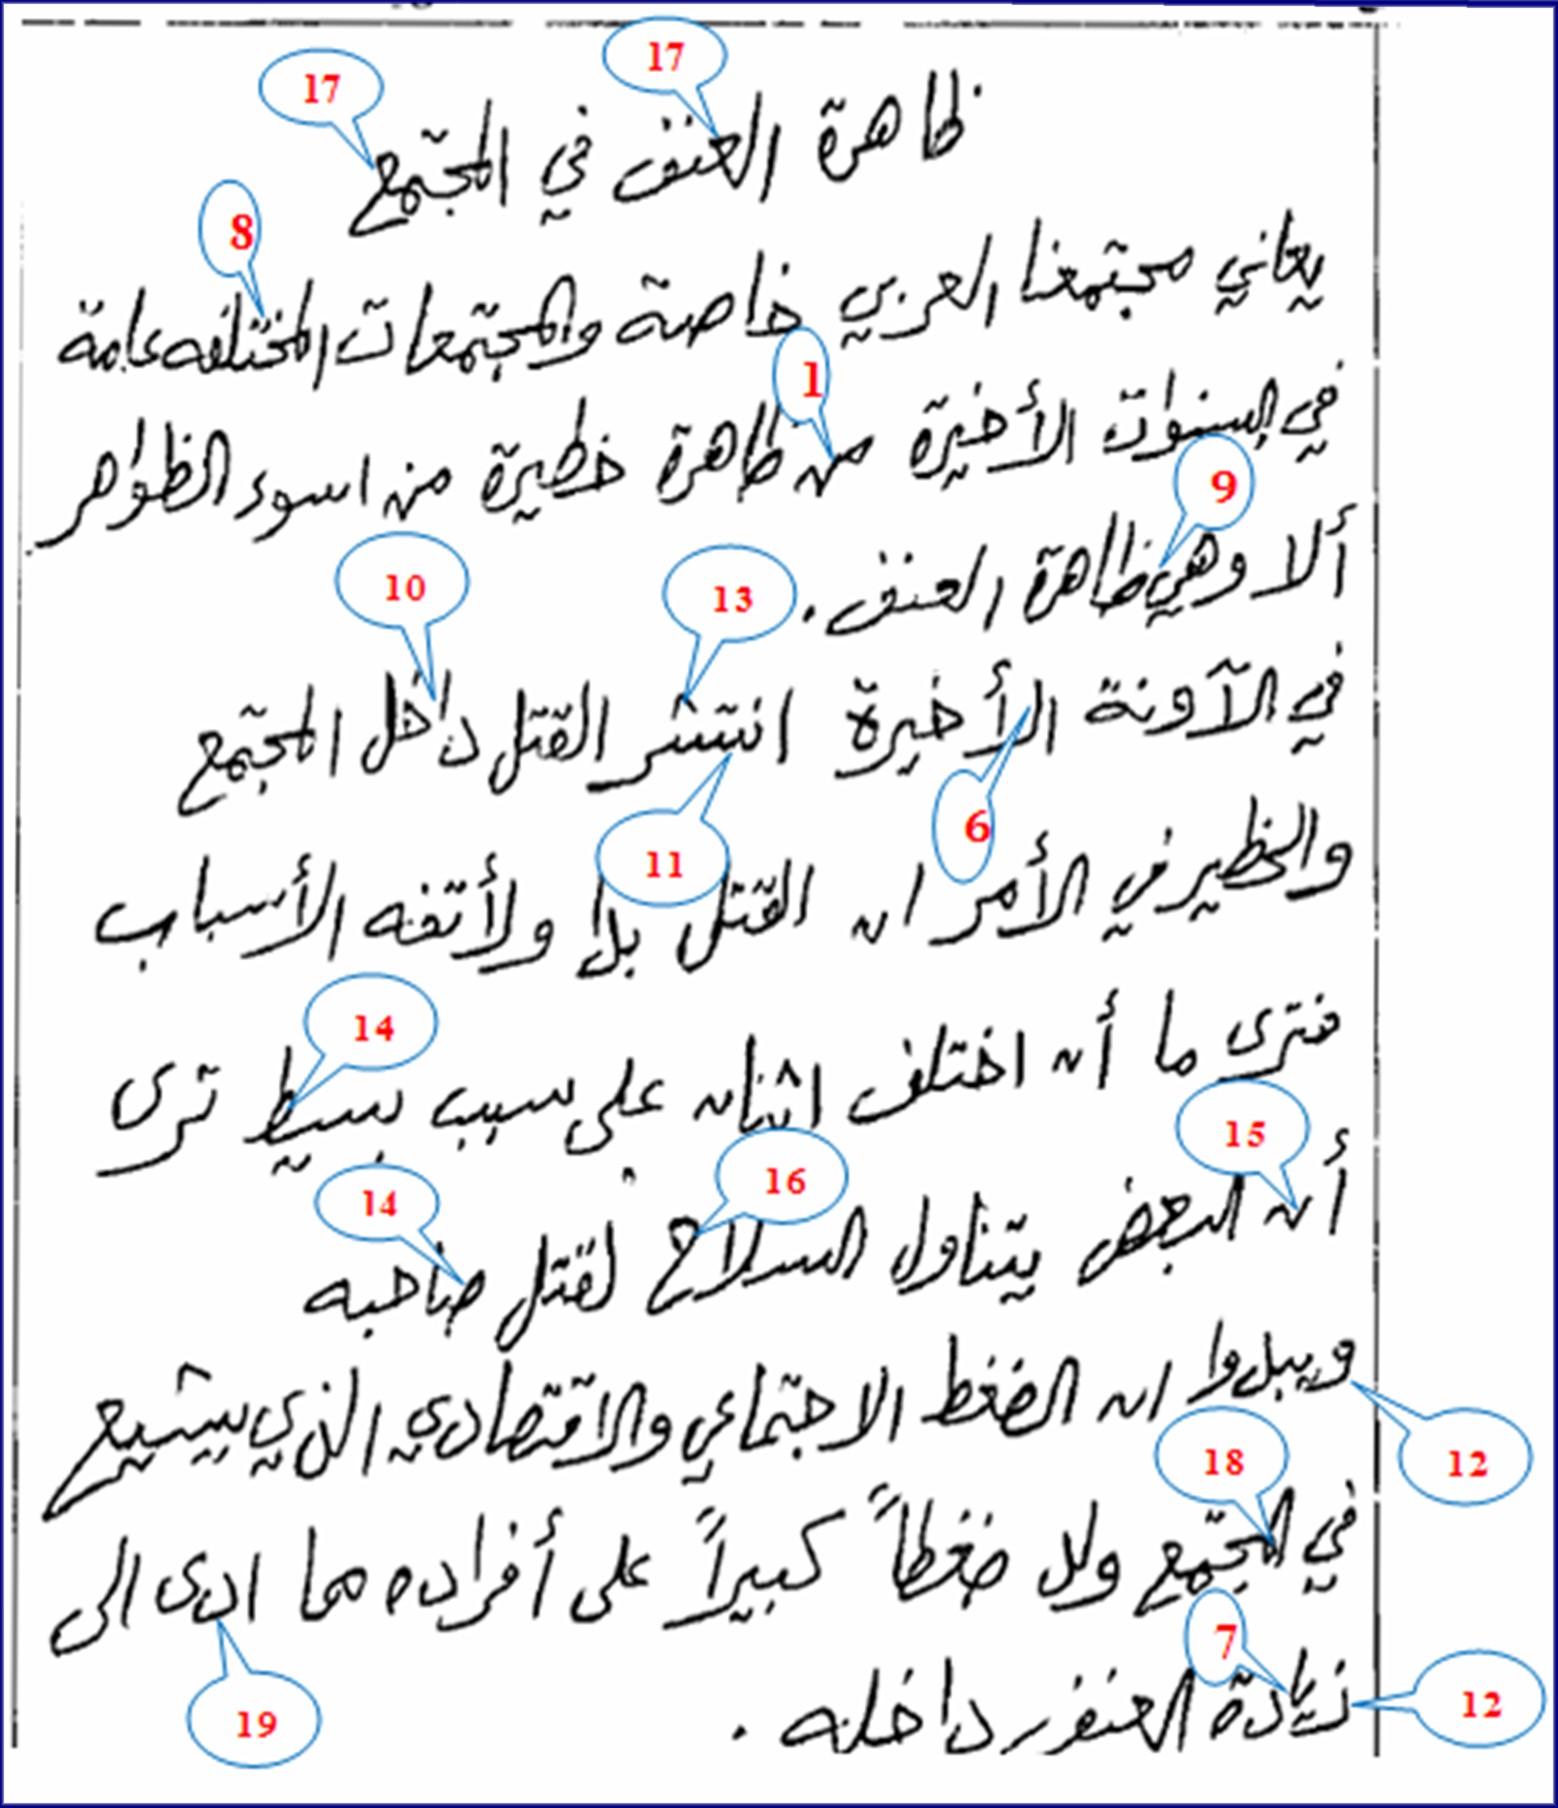 כתב יד ערבי